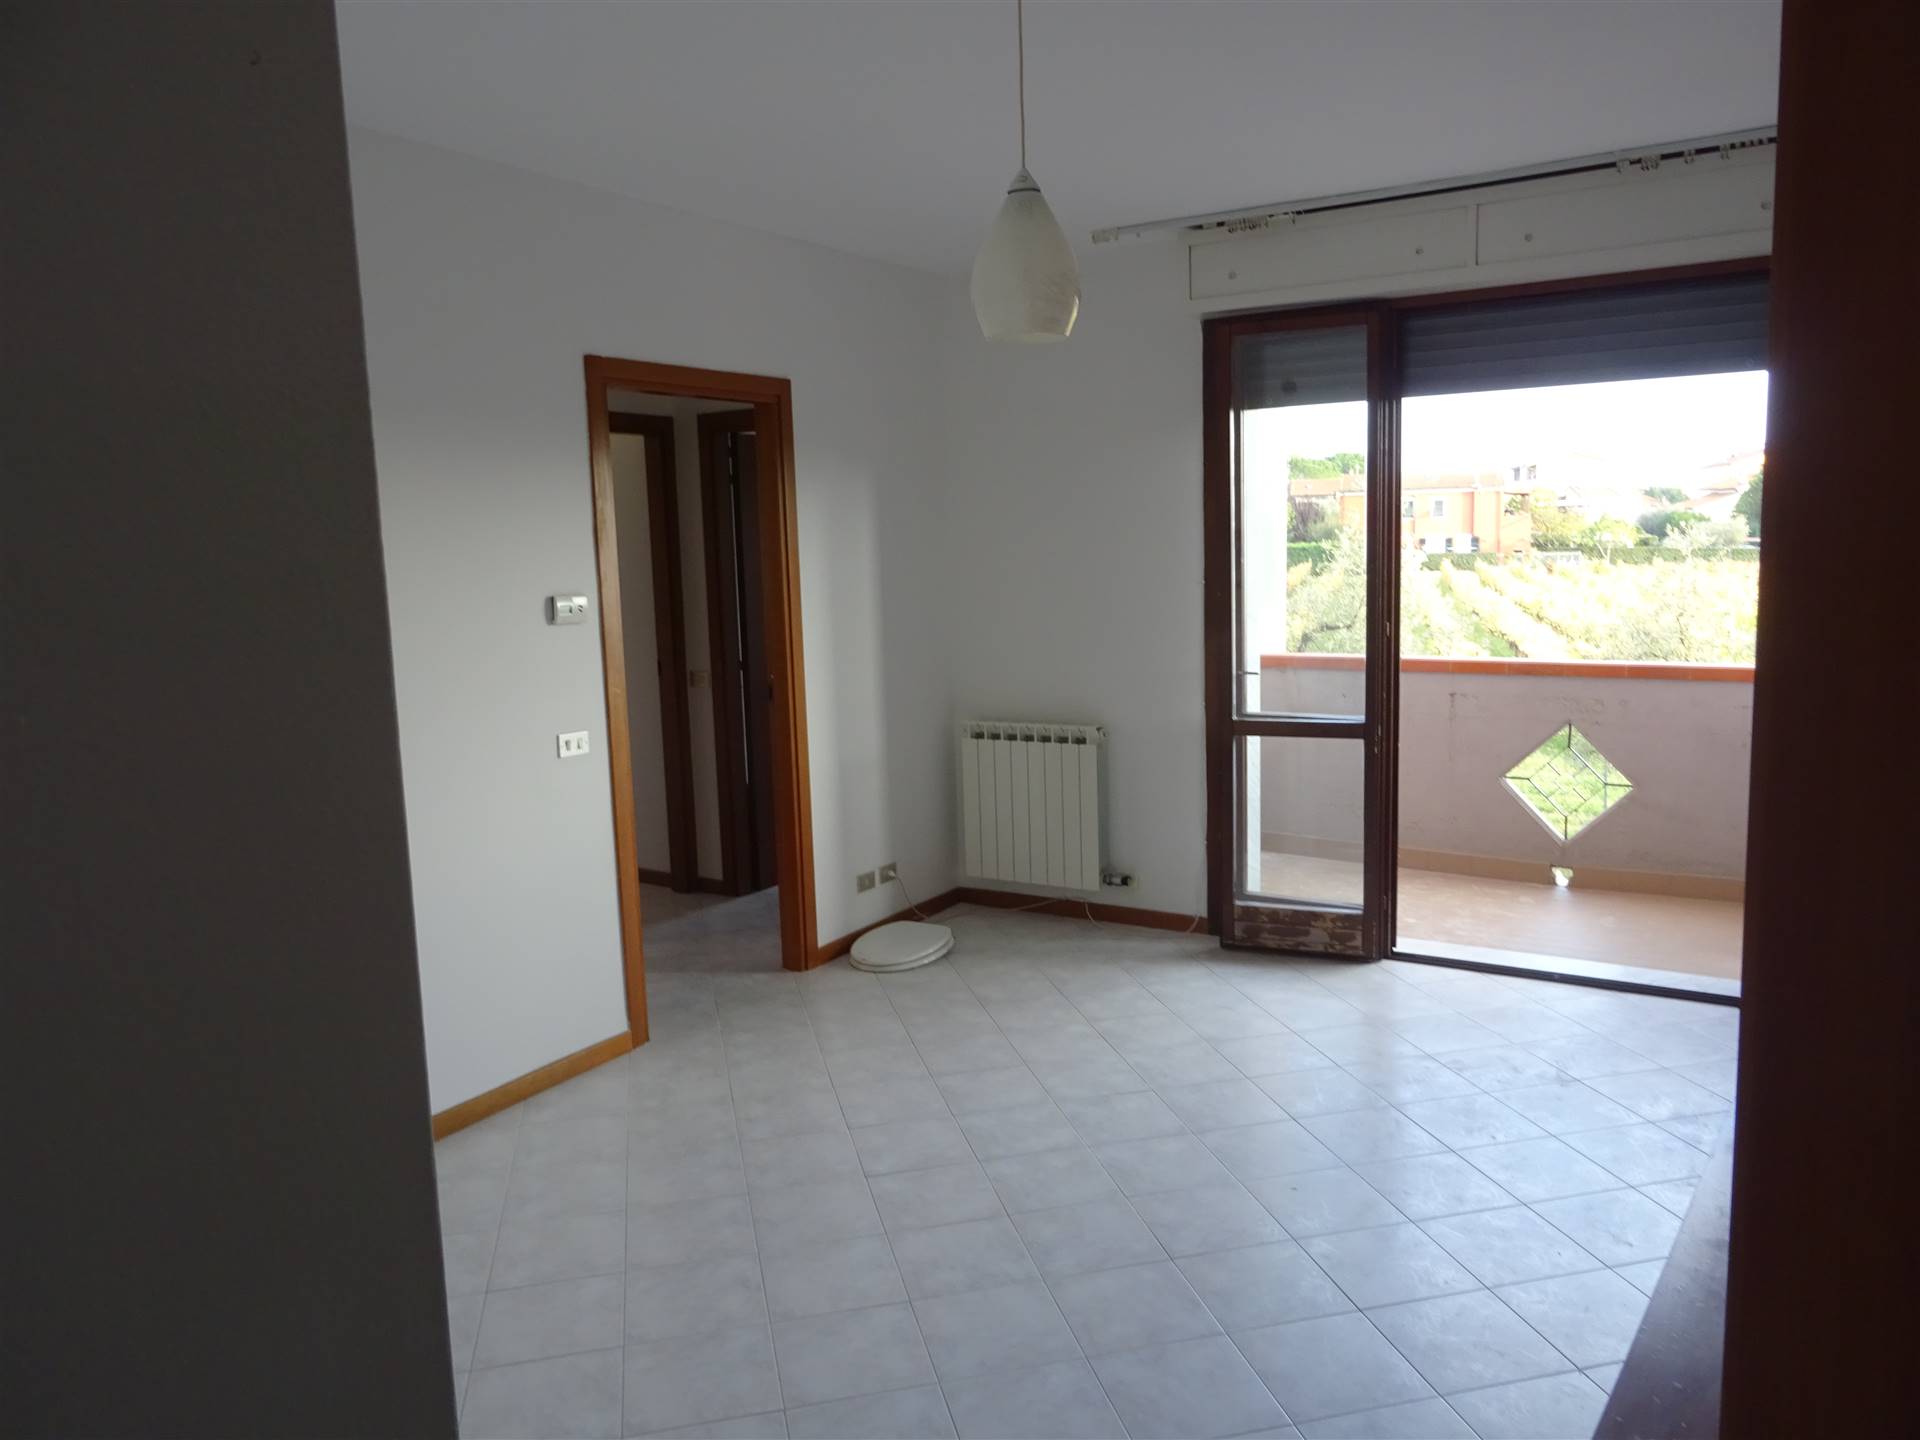 Appartamento in affitto a Sarzana, 3 locali, zona Località: GHIARETTOLO, prezzo € 600 | PortaleAgenzieImmobiliari.it